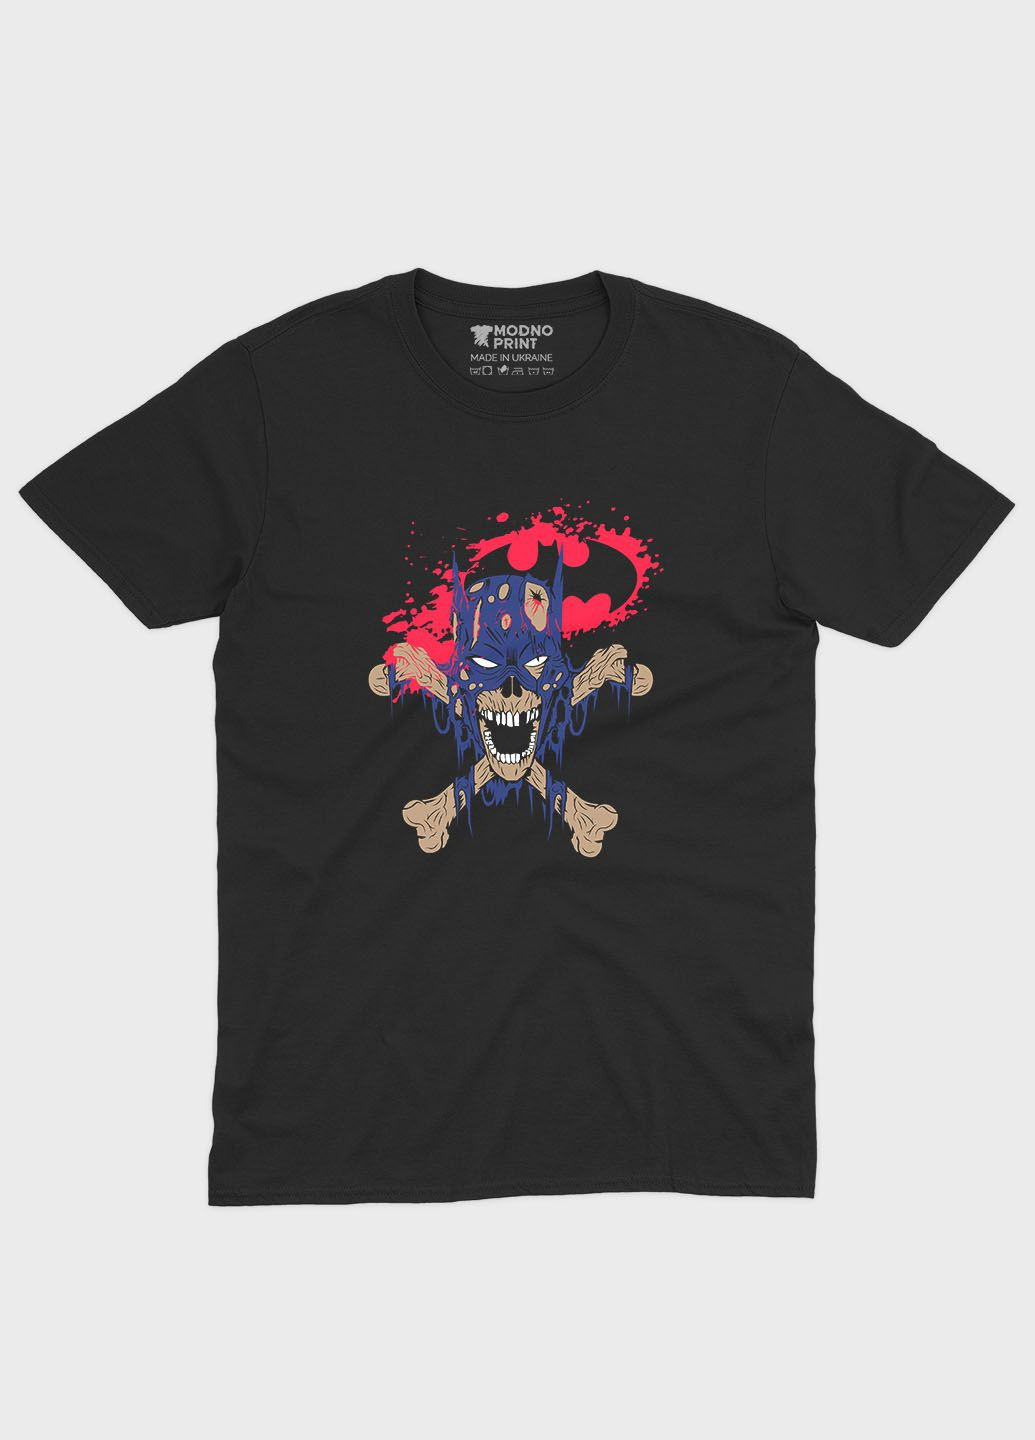 Черная демисезонная футболка для мальчика с принтом супергероя - бэтмен (ts001-1-bl-006-003-038-b) Modno